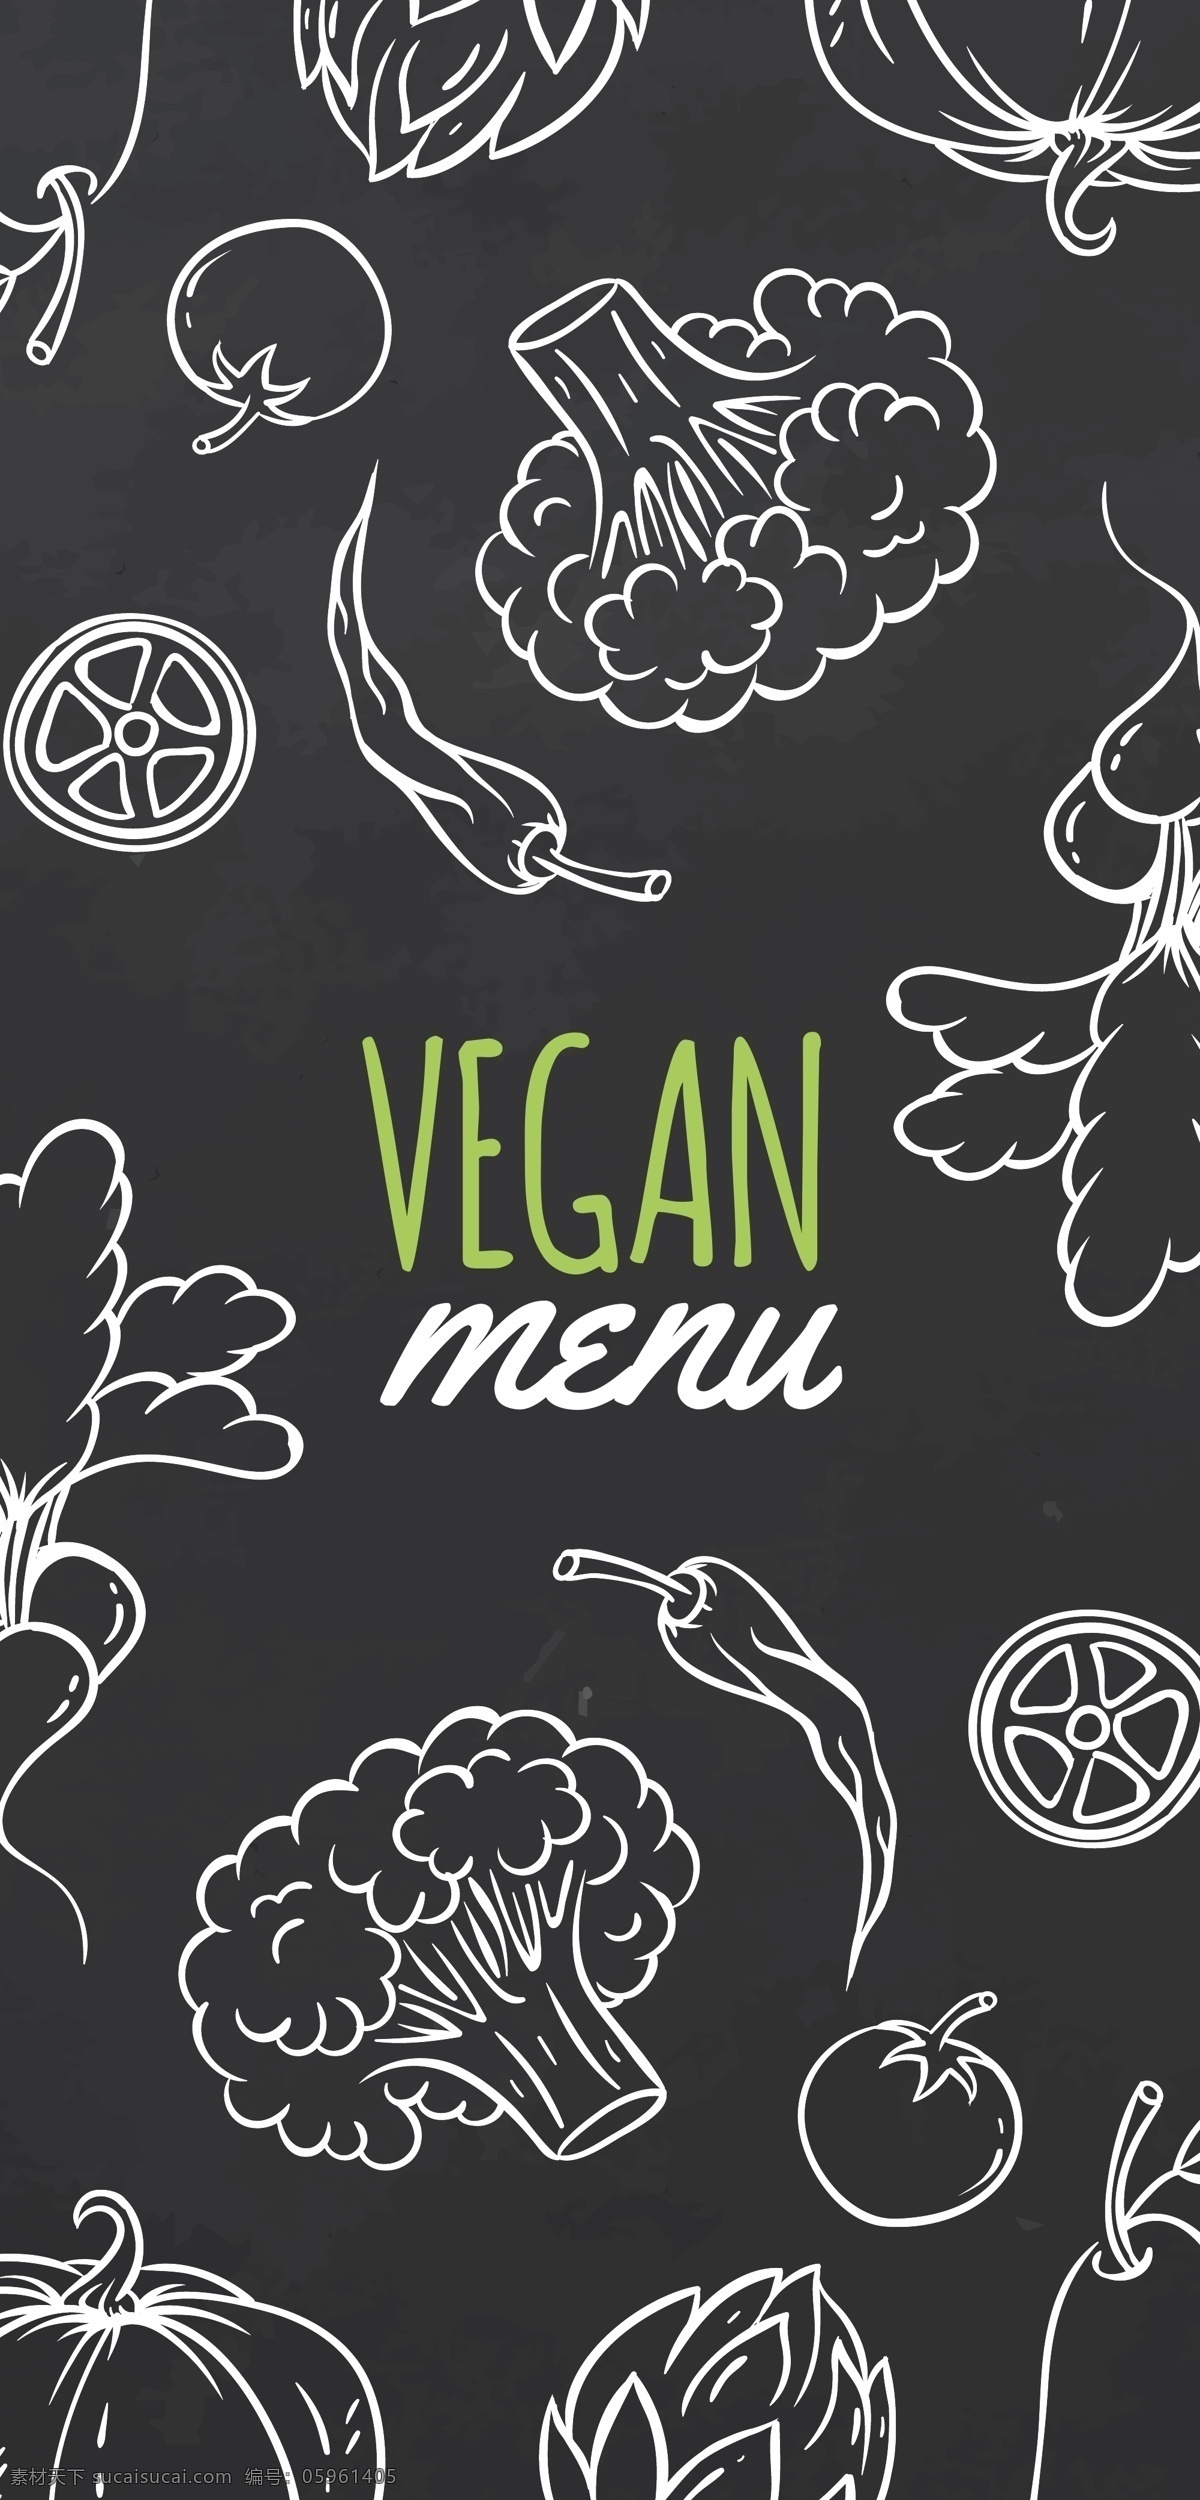 素食菜单设计 素食菜单 菜单 食物 线框素食